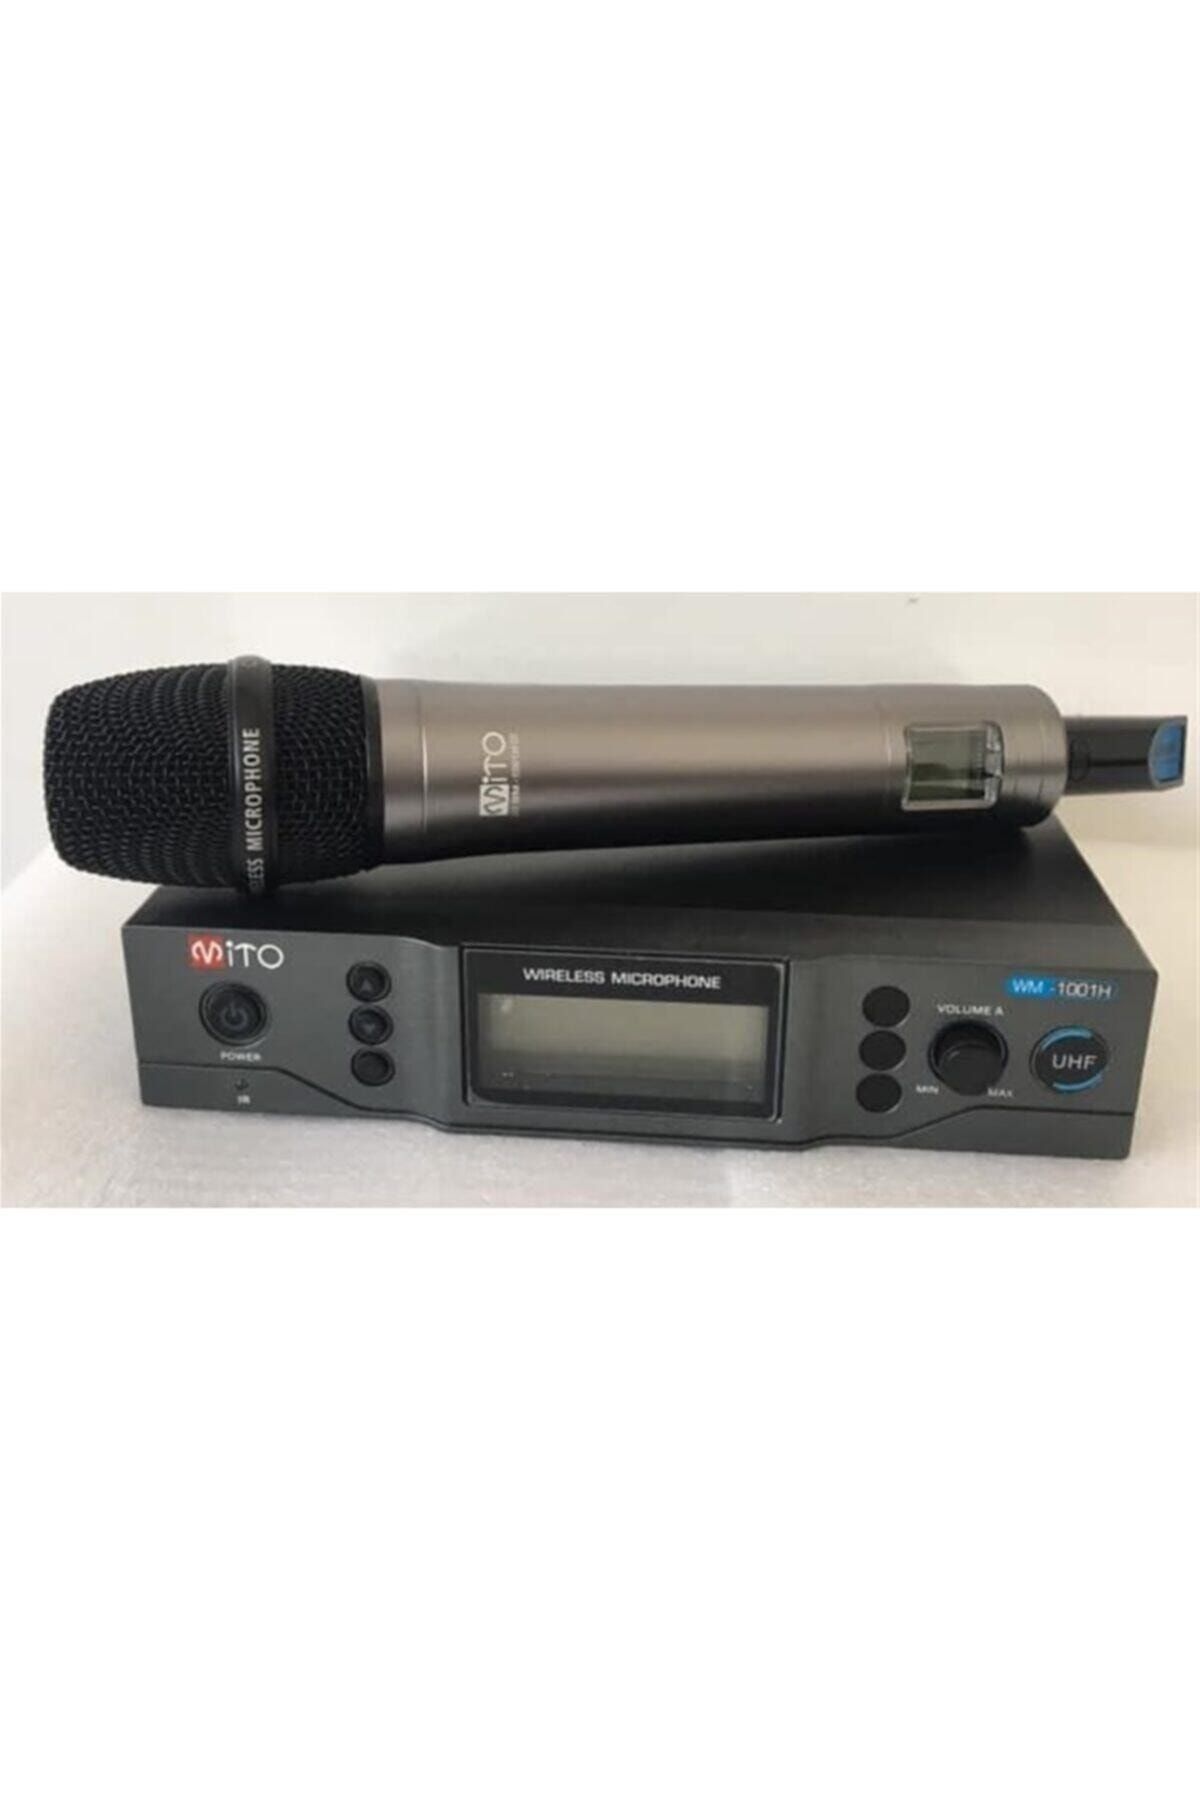 Mito Mikrofon Wm-1001 H